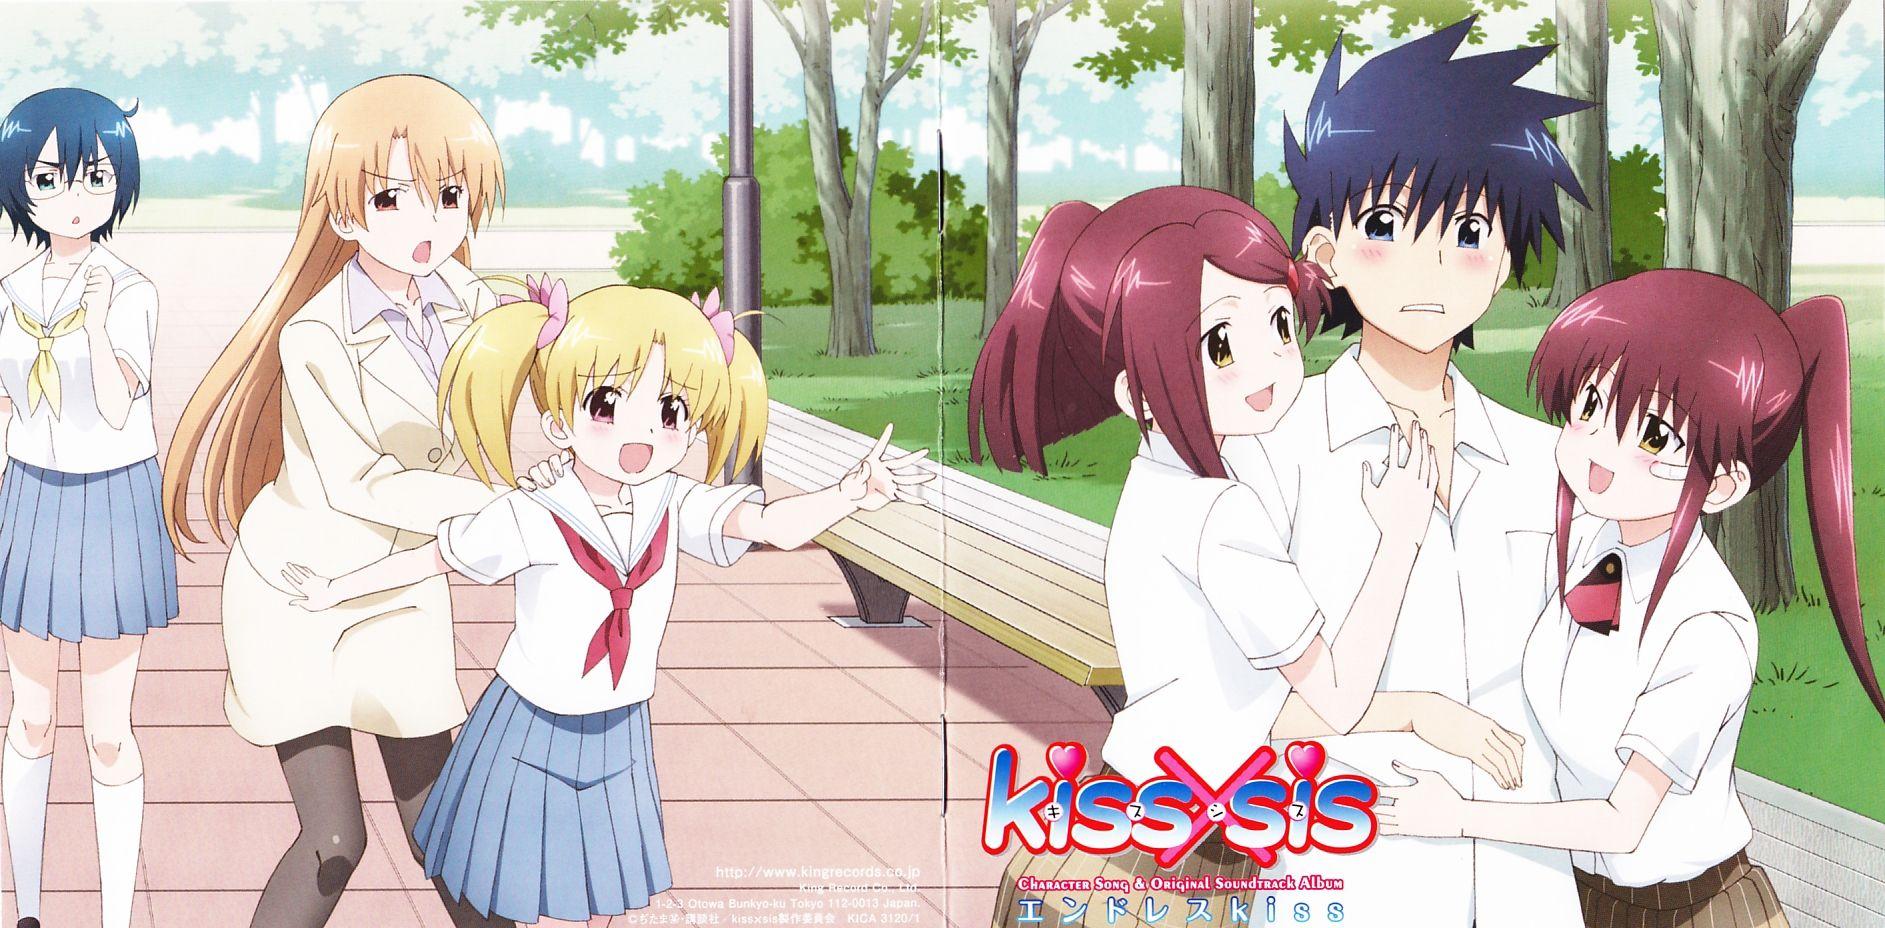 Anime Kiss×sis 4k Ultra HD Wallpaper